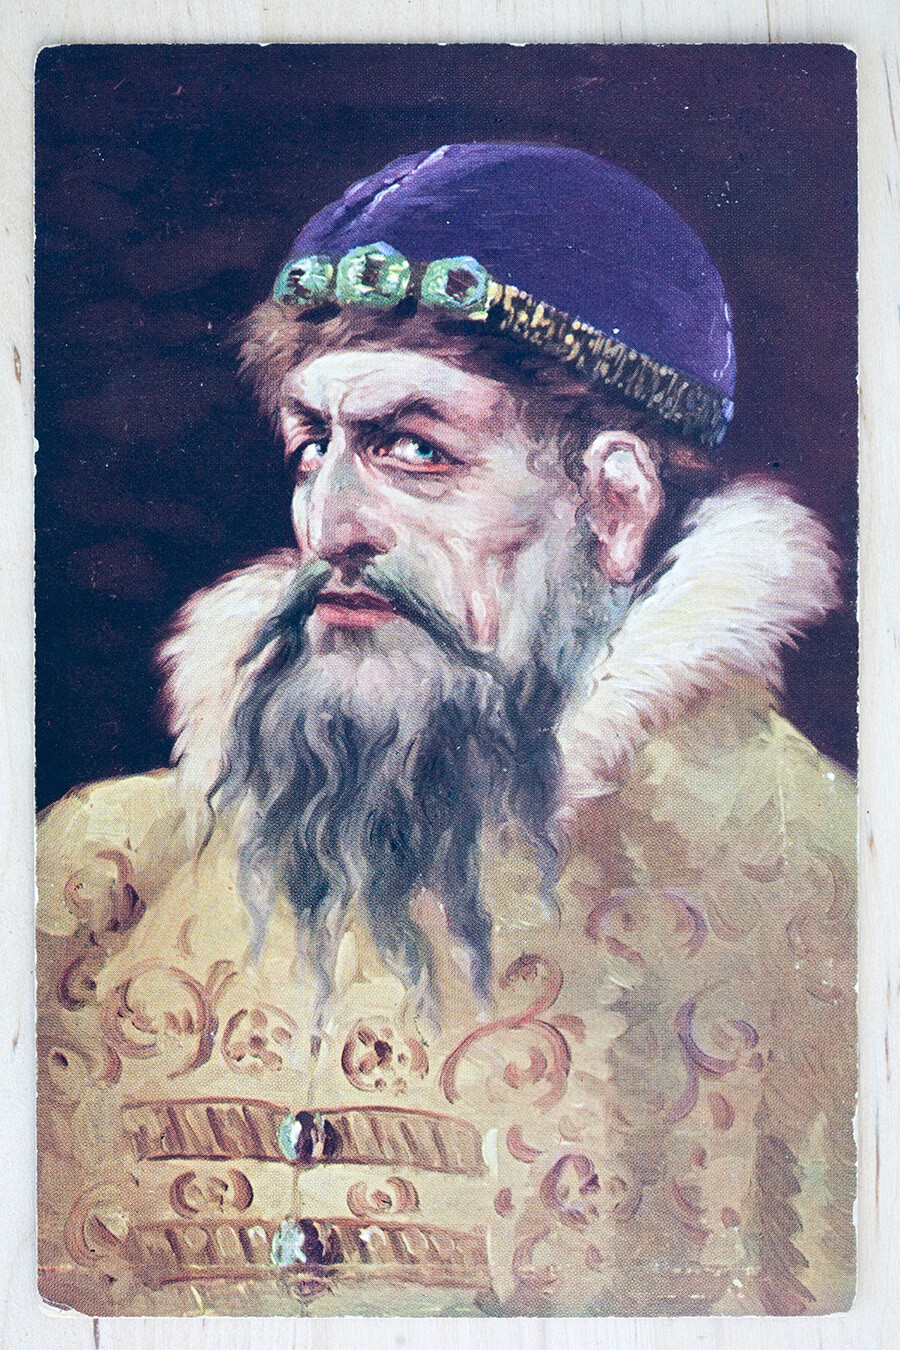 Russische Postkarte von Iwan dem Schrecklichen aus dem frühen 20. Jahrhundert.